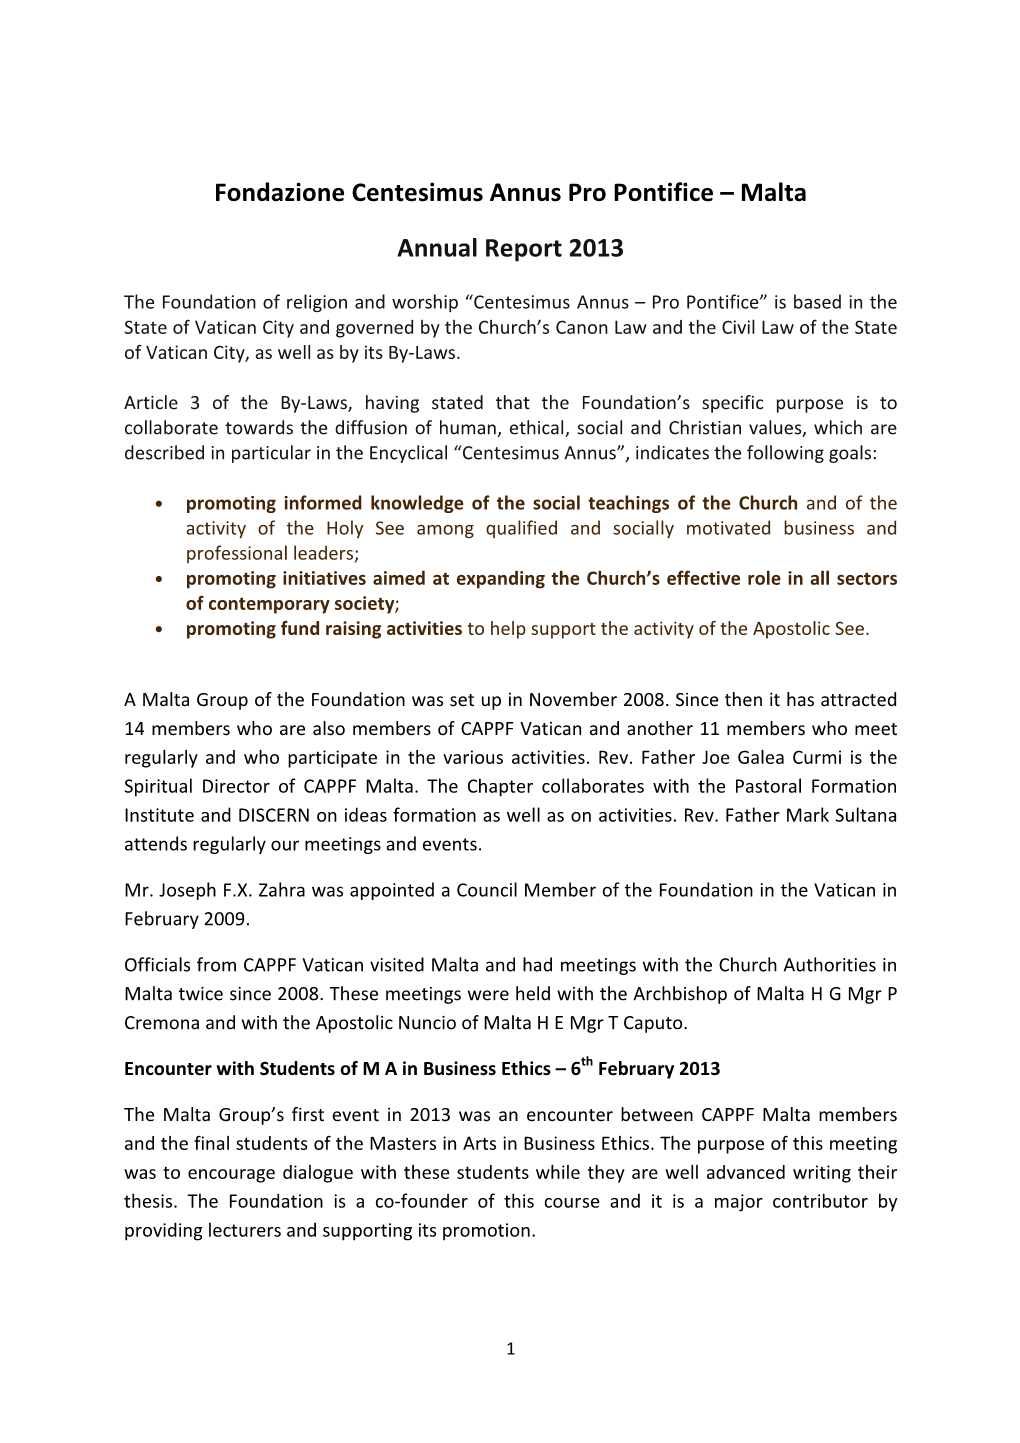 Malta Annual Report 2013